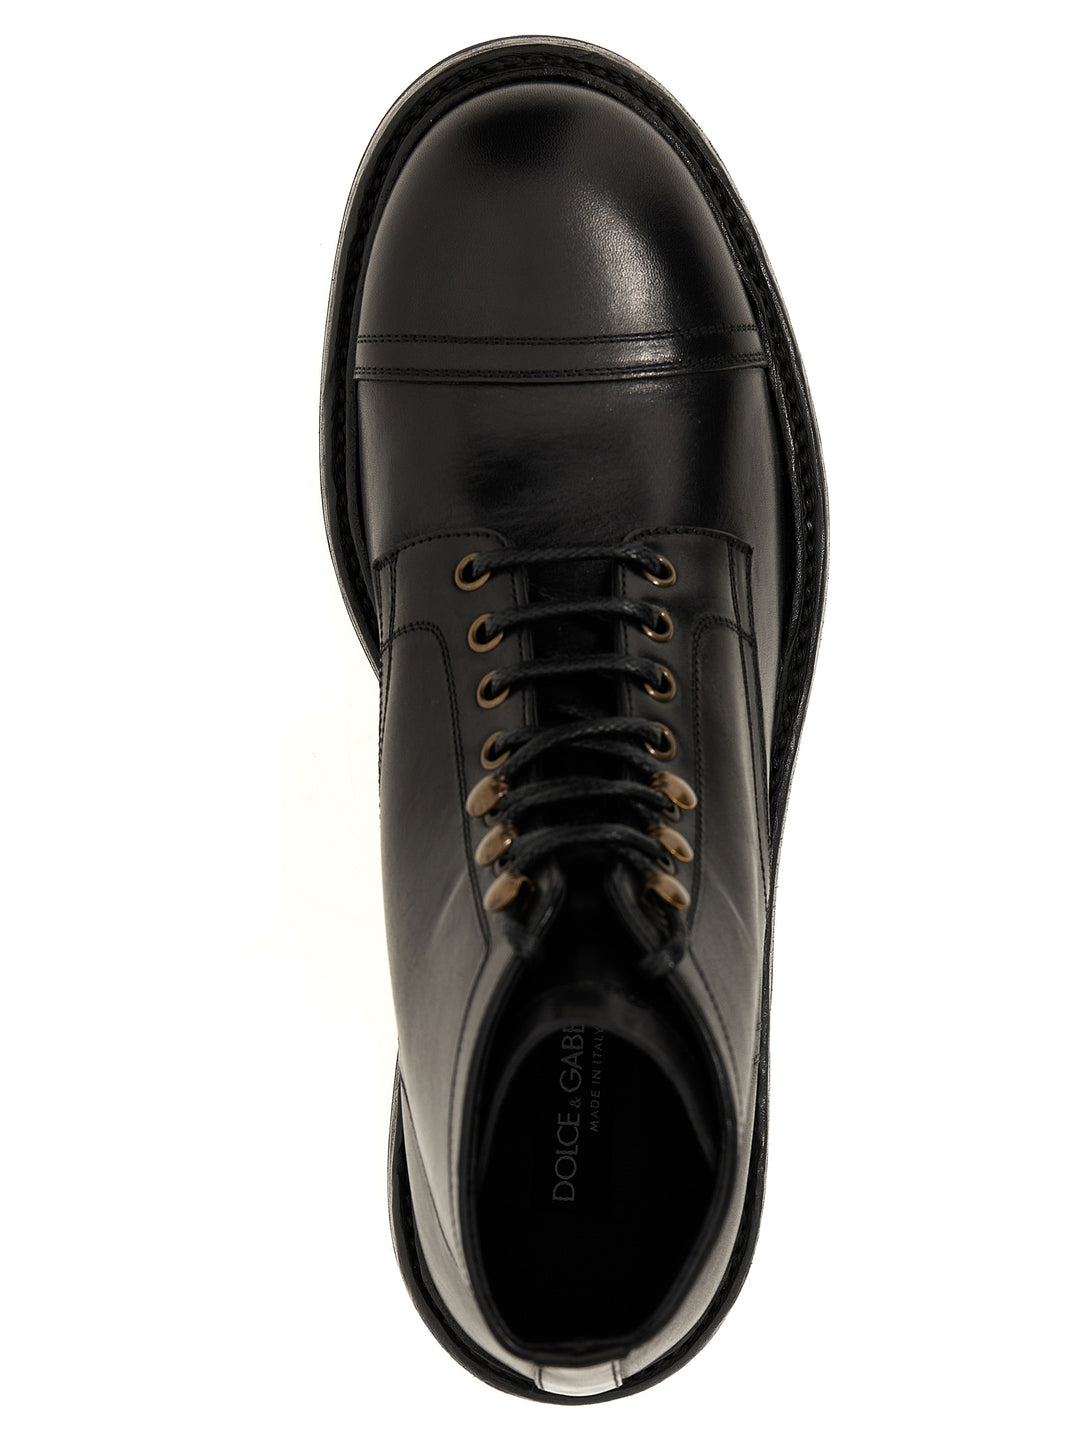 Leather Ankle Boots Stivali E Stivaletti Nero